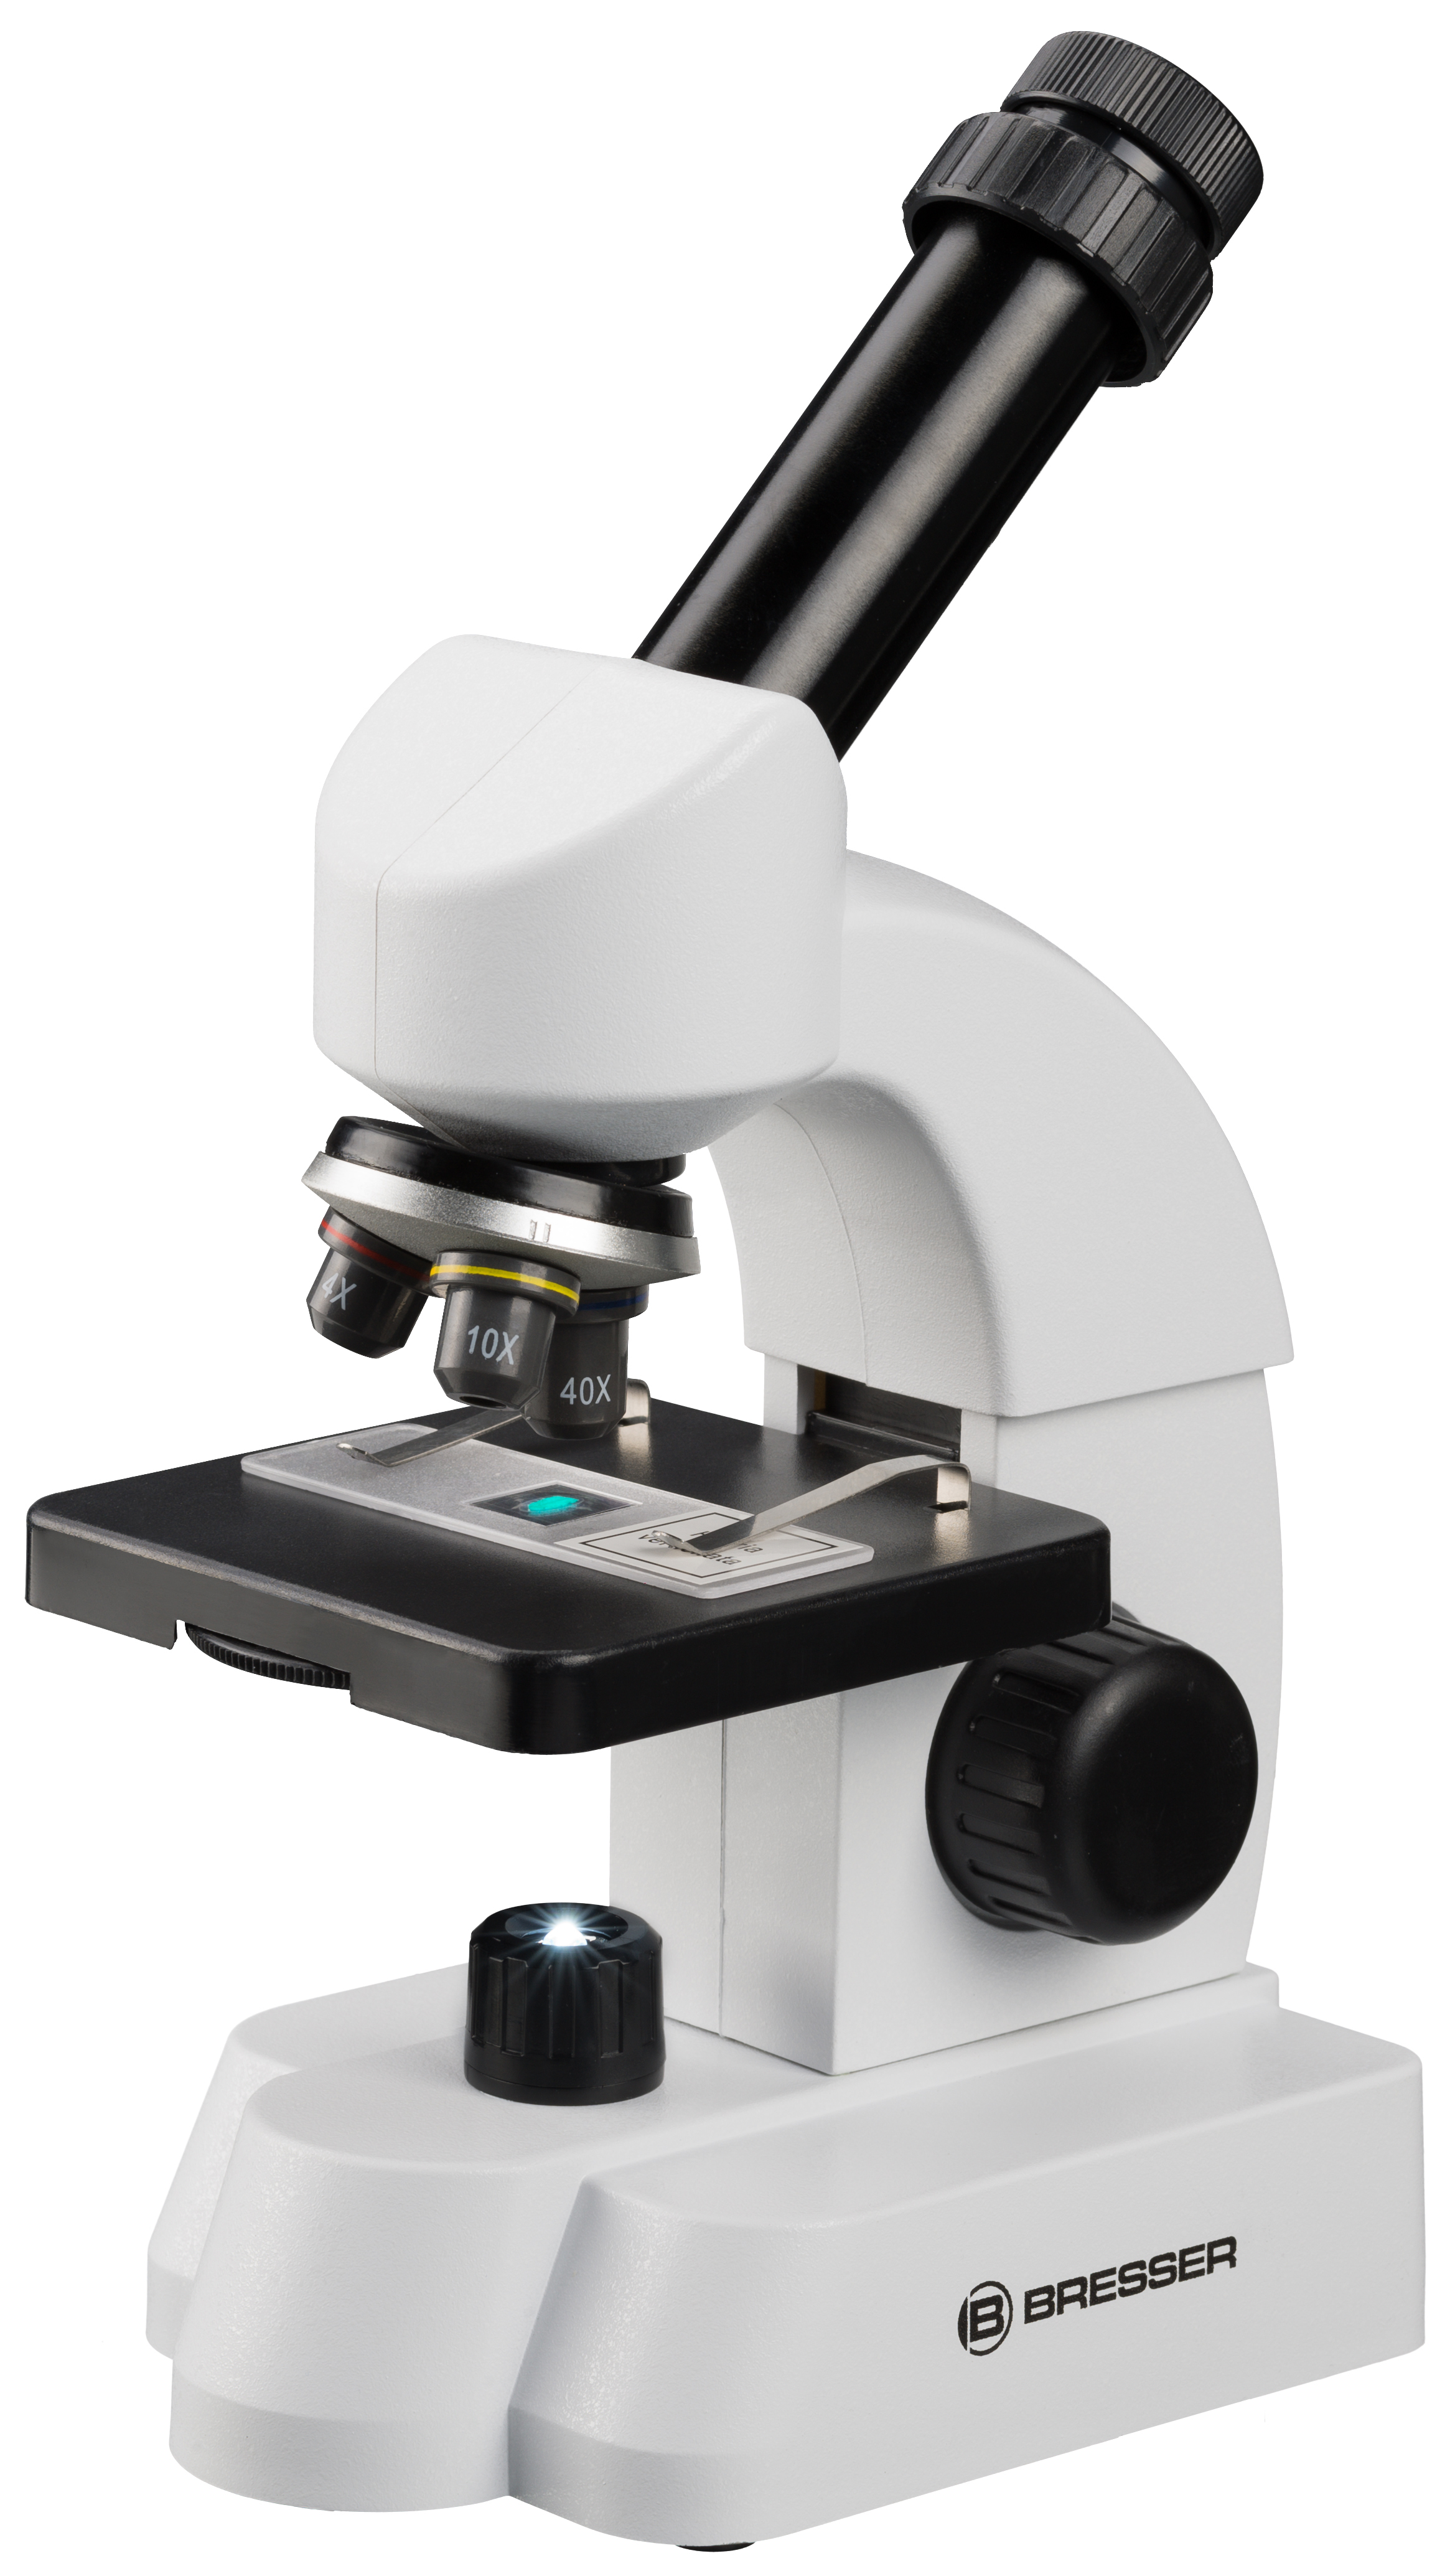 BRESSER JUNIOR 40-640x Mikroskop mit smartem Experimentier-Set mit QR-Code für Zusatzinfos (Refurbished)